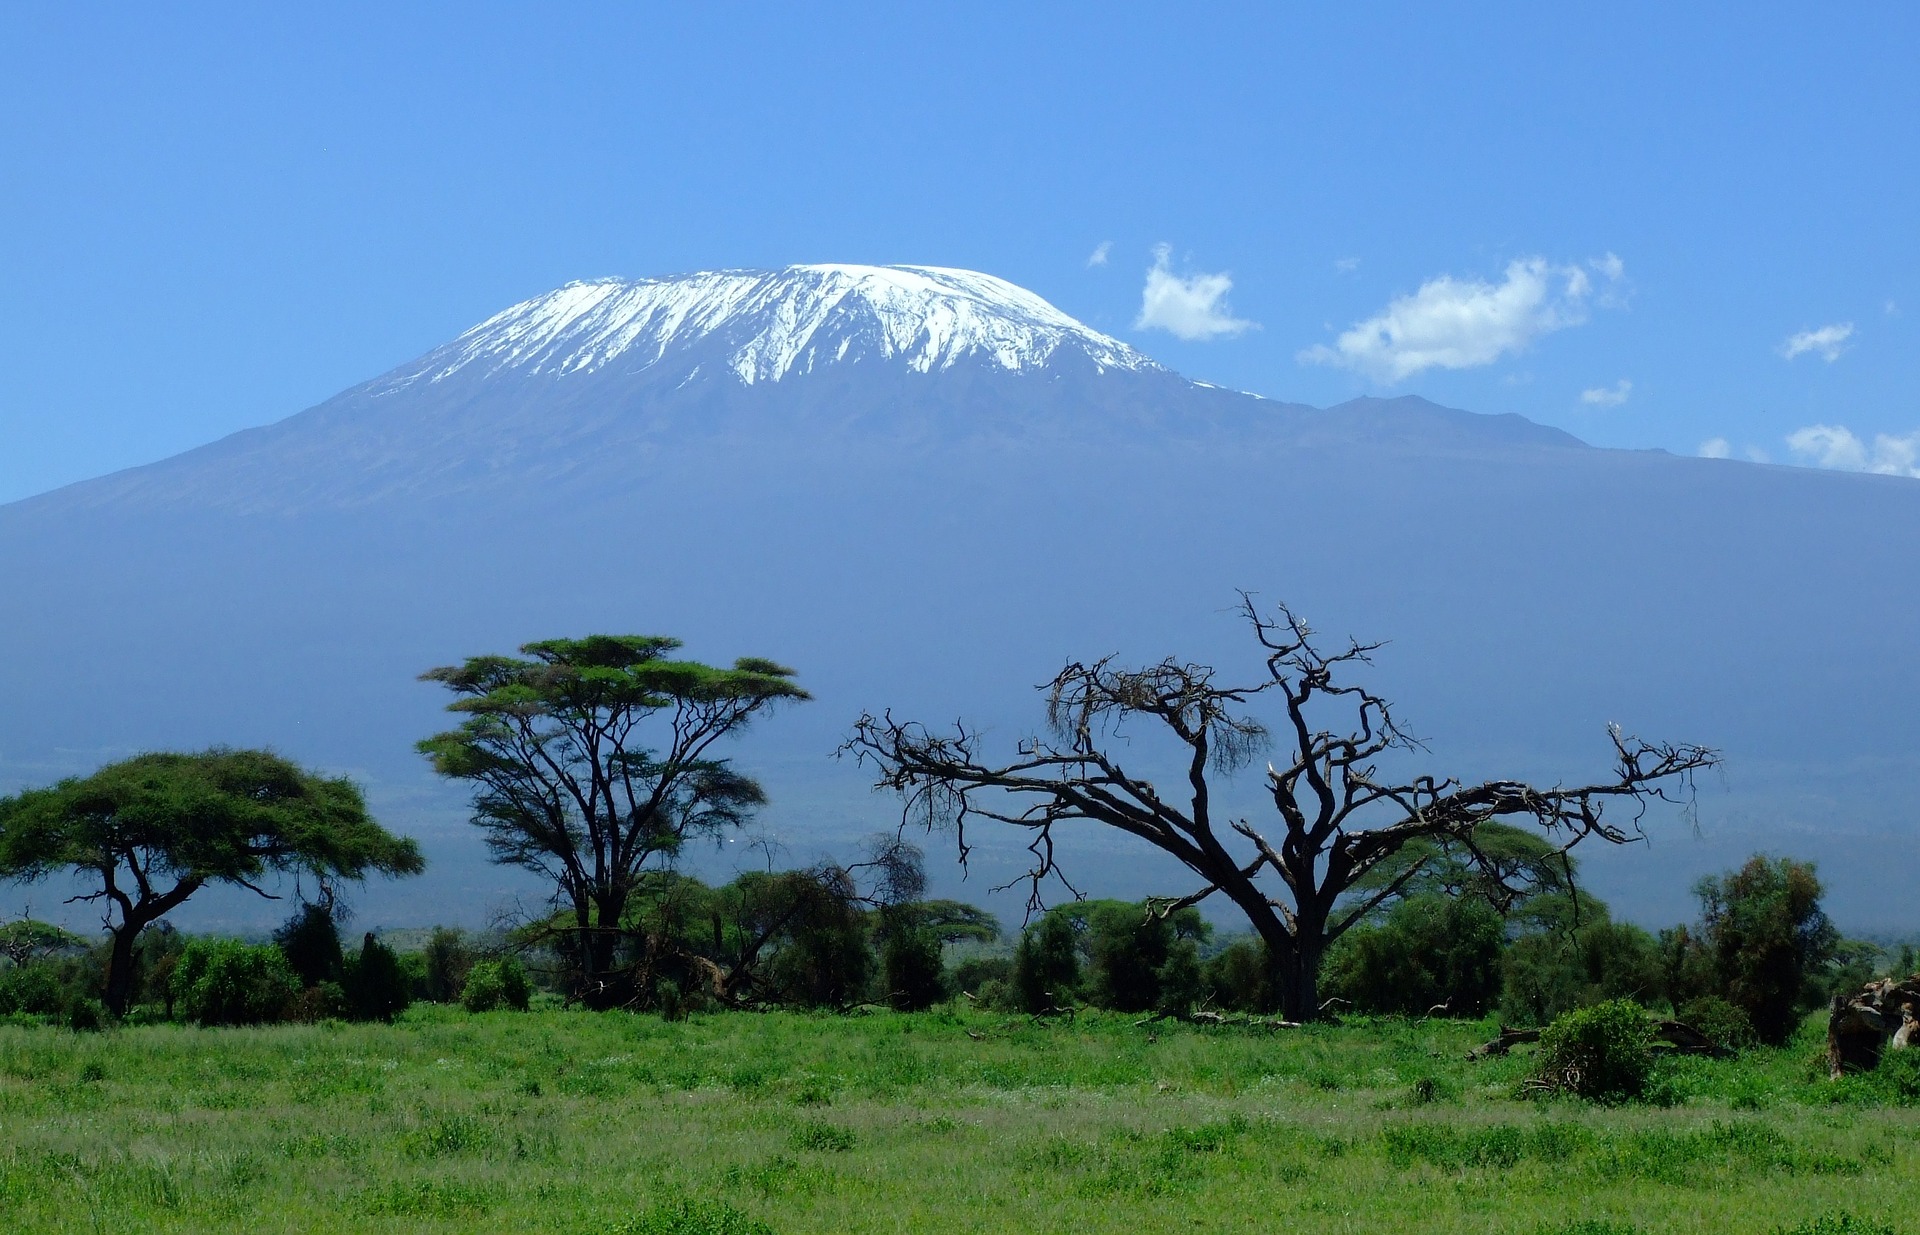 Parque Nacional del Monte Kenia